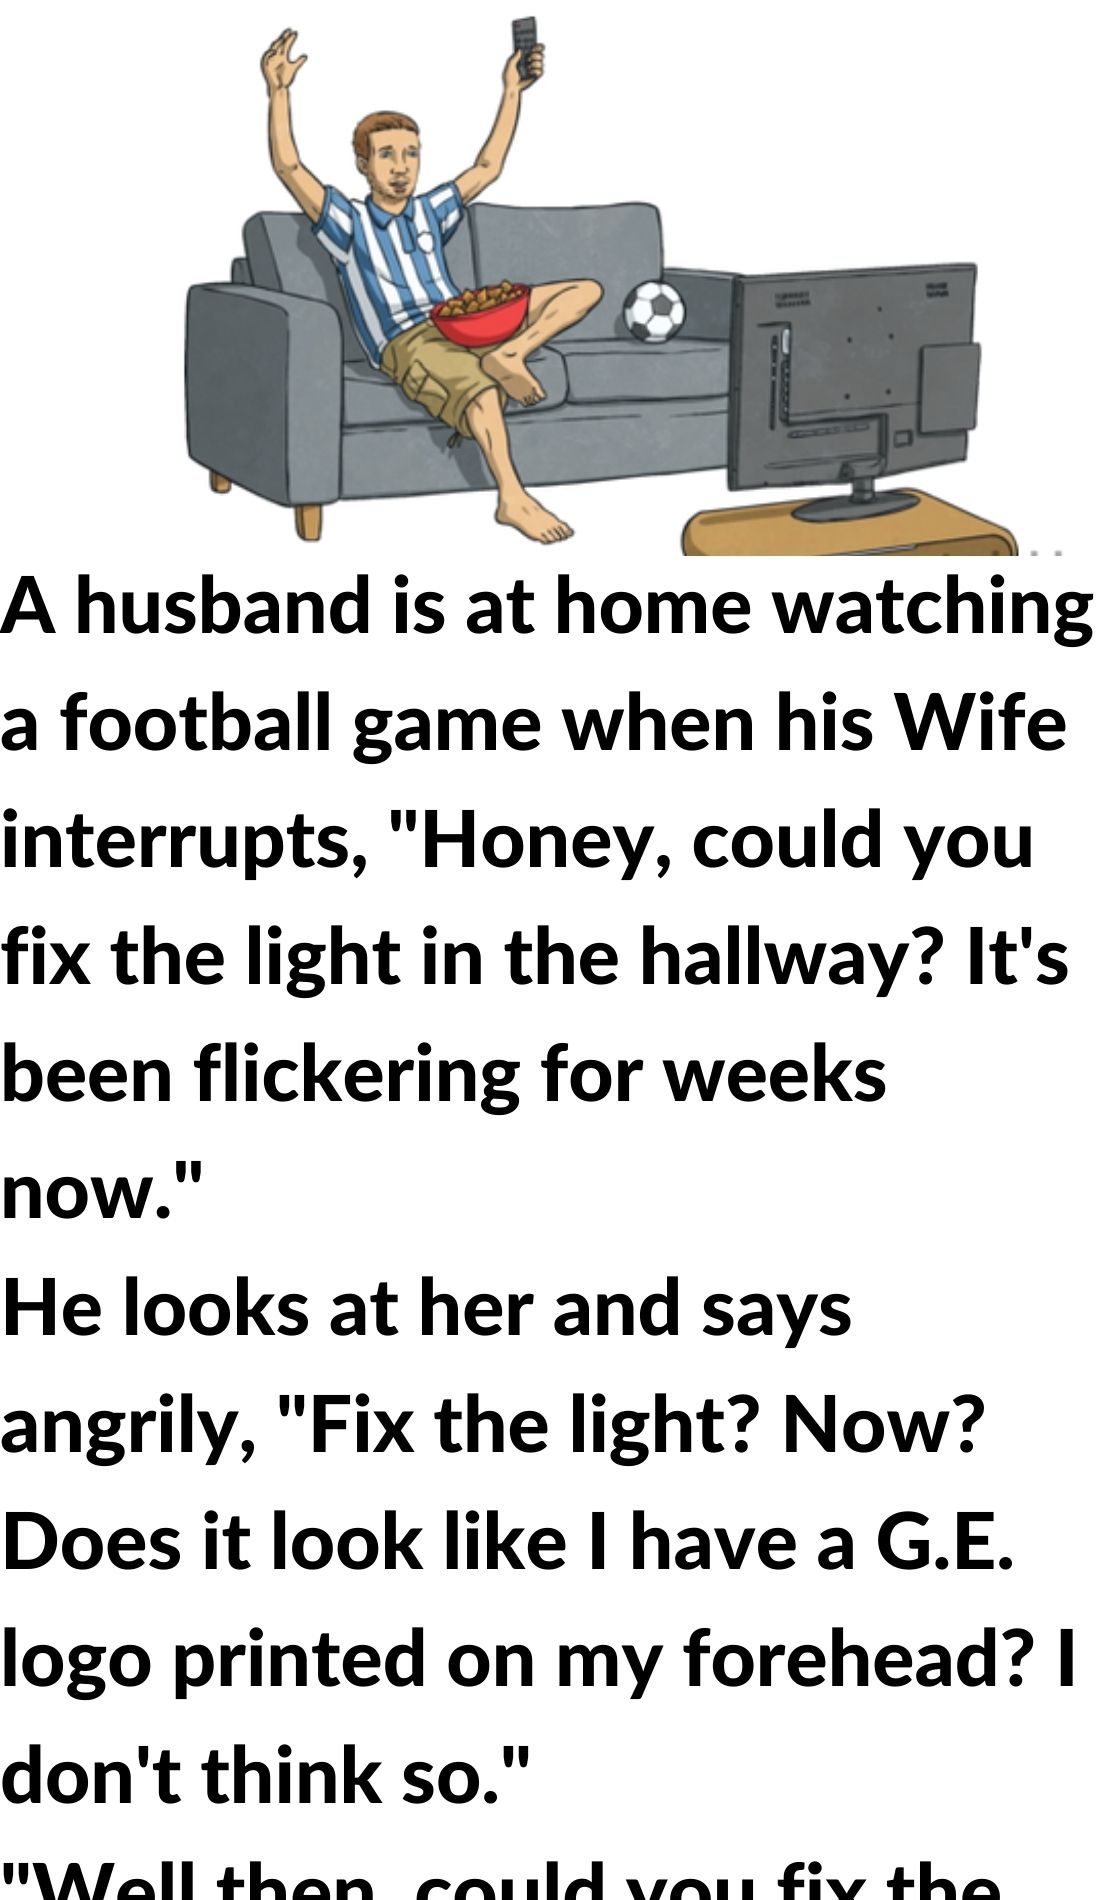 A husband is a football match